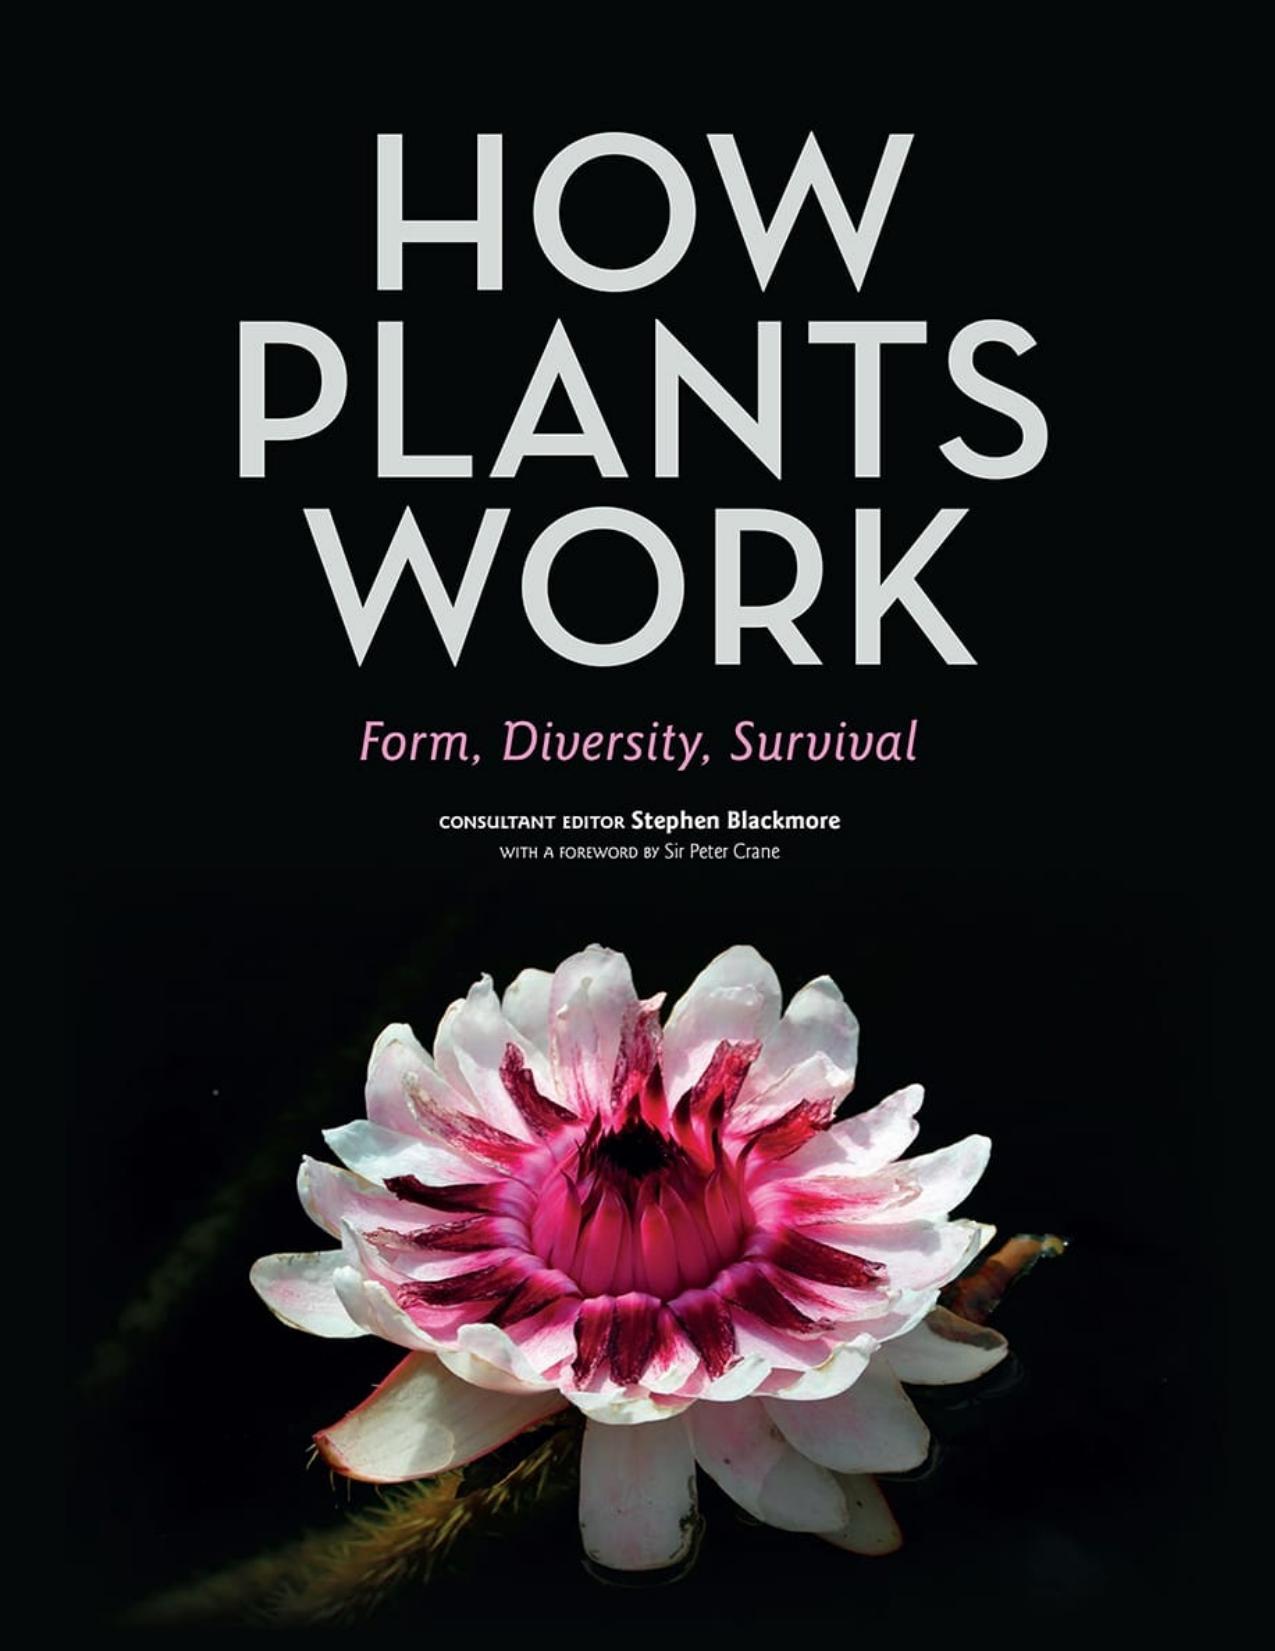 How Plants Work: Form, Diversity, Survival - PDFDrive.com